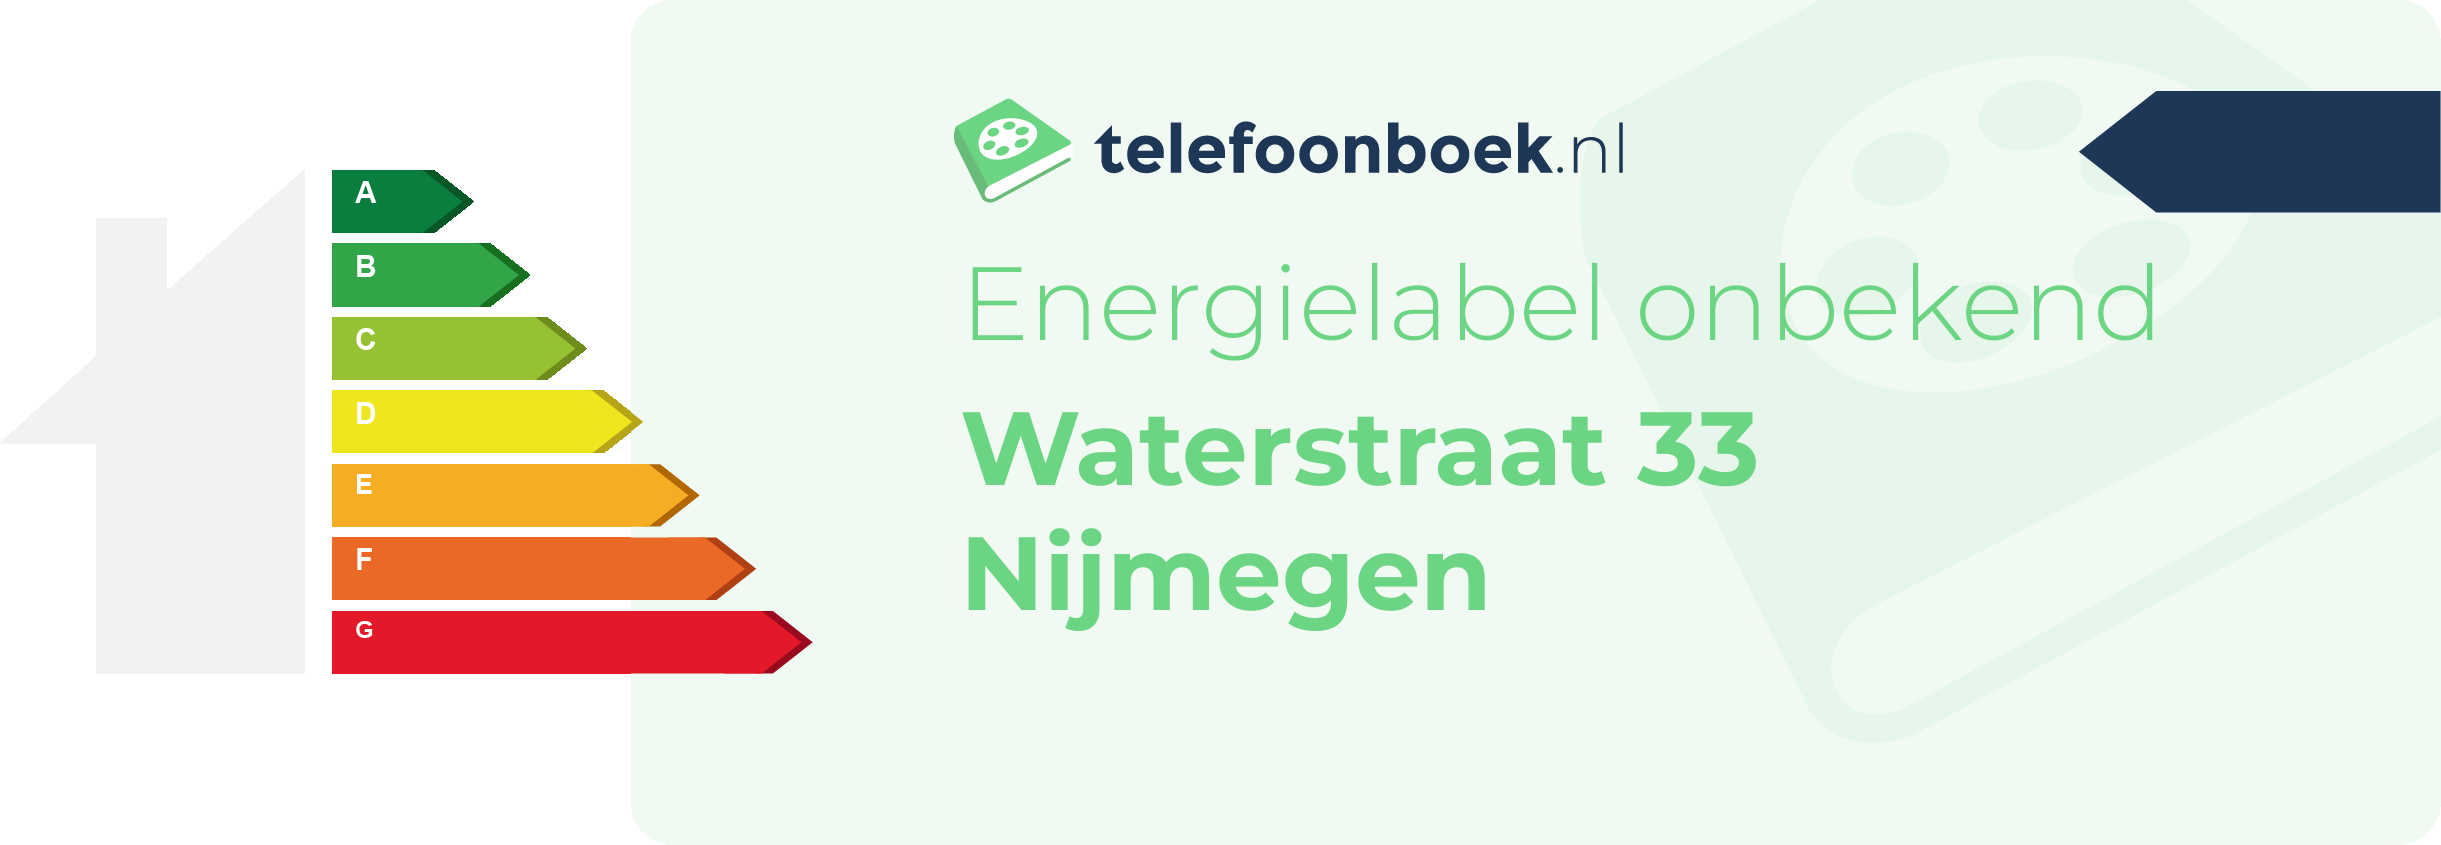 Energielabel Waterstraat 33 Nijmegen